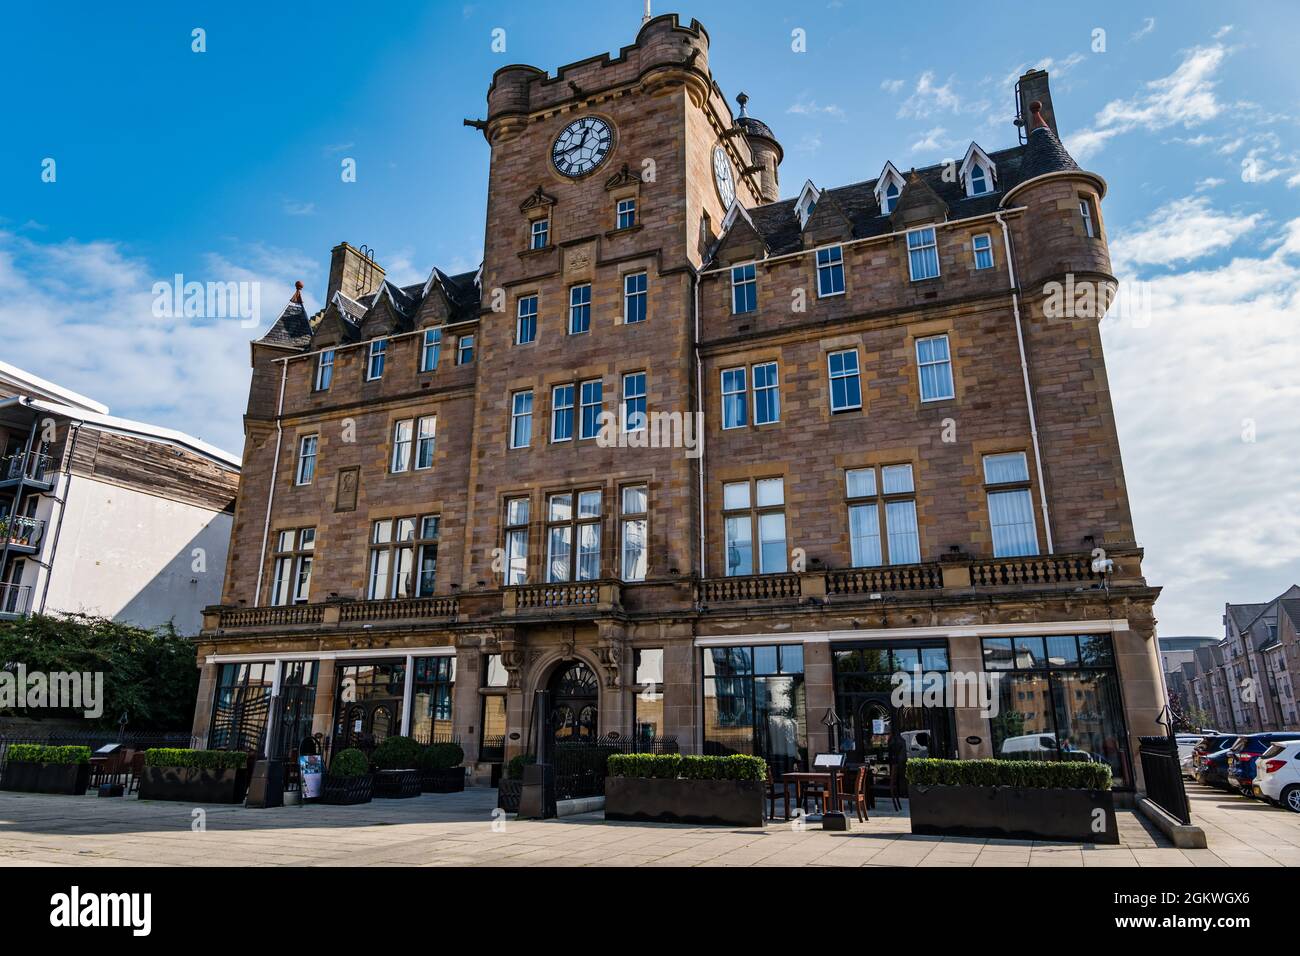 Grand bâtiment victorien aujourd'hui Malmaison Hôtel avec tour de l'horloge un jour ensoleillé avec ciel bleu, Leith, Edimbourg, Ecosse, Royaume-Uni Banque D'Images